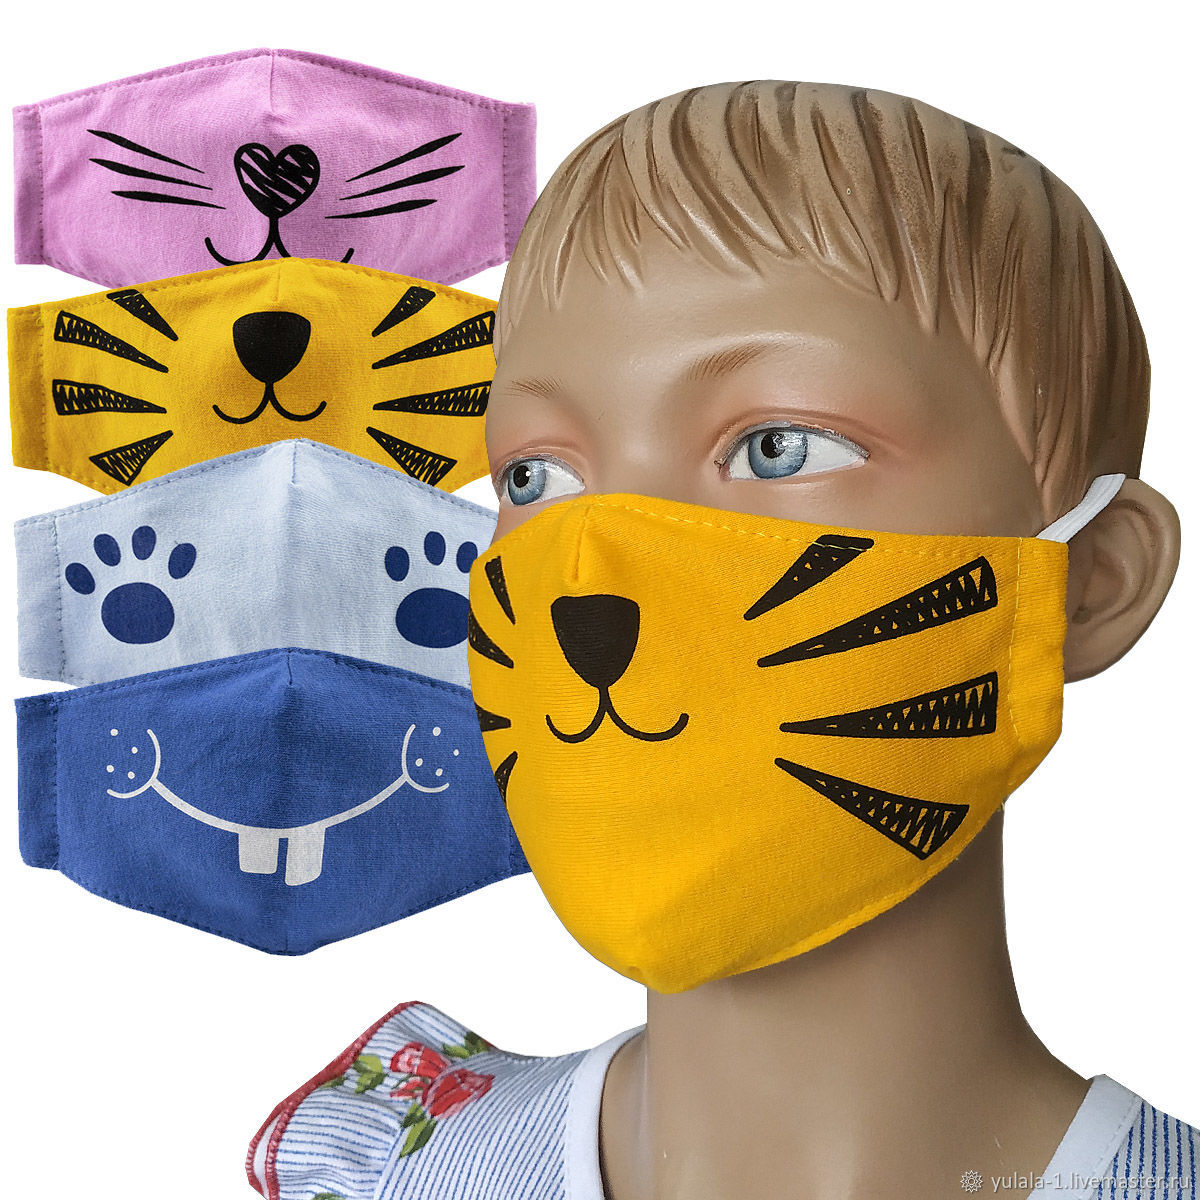 Купить маску россия. Детские маски. Детские защитные маски. Маски детские многоразовые. Оригинальные маски.